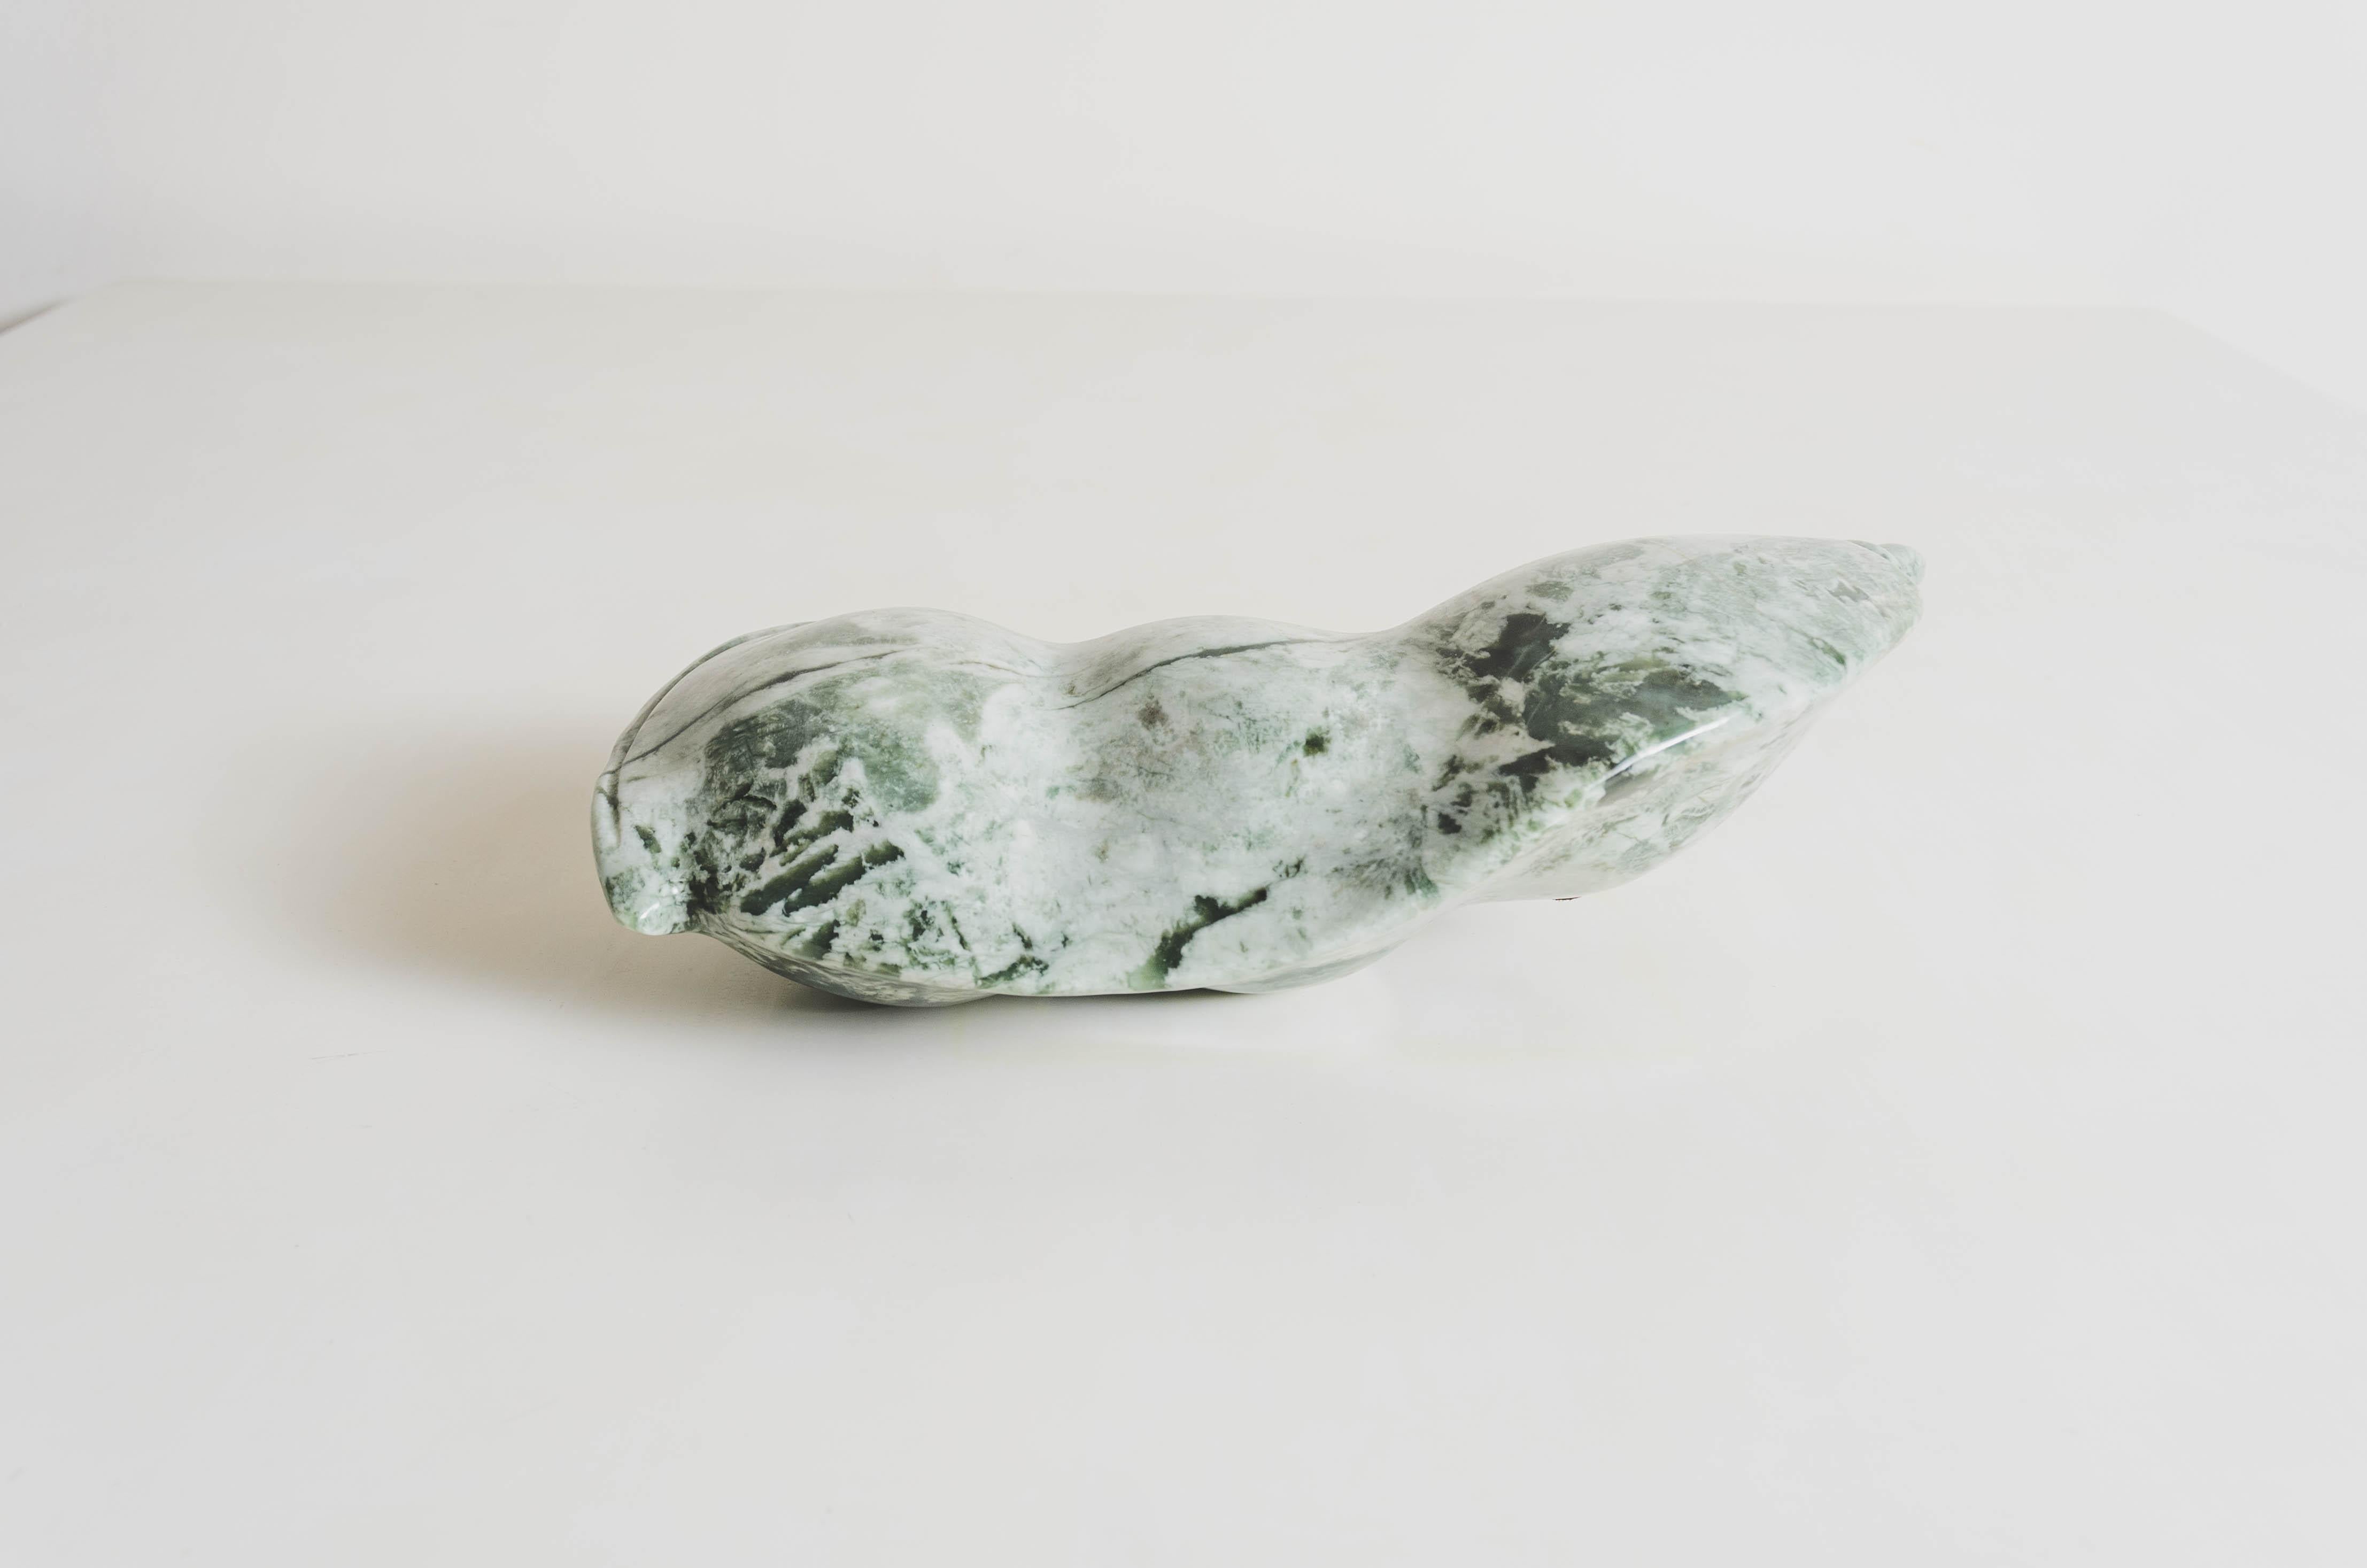 Sculpture de haricots de Lima
Jade néphrite
Sculpté à la main
Edition limitée

Connue sous le nom de « pierre du ciel », la jade néphrite est prisée pour sa beauté esthétique et sa valeur symbolique, les anciens Chinois la considérant comme un